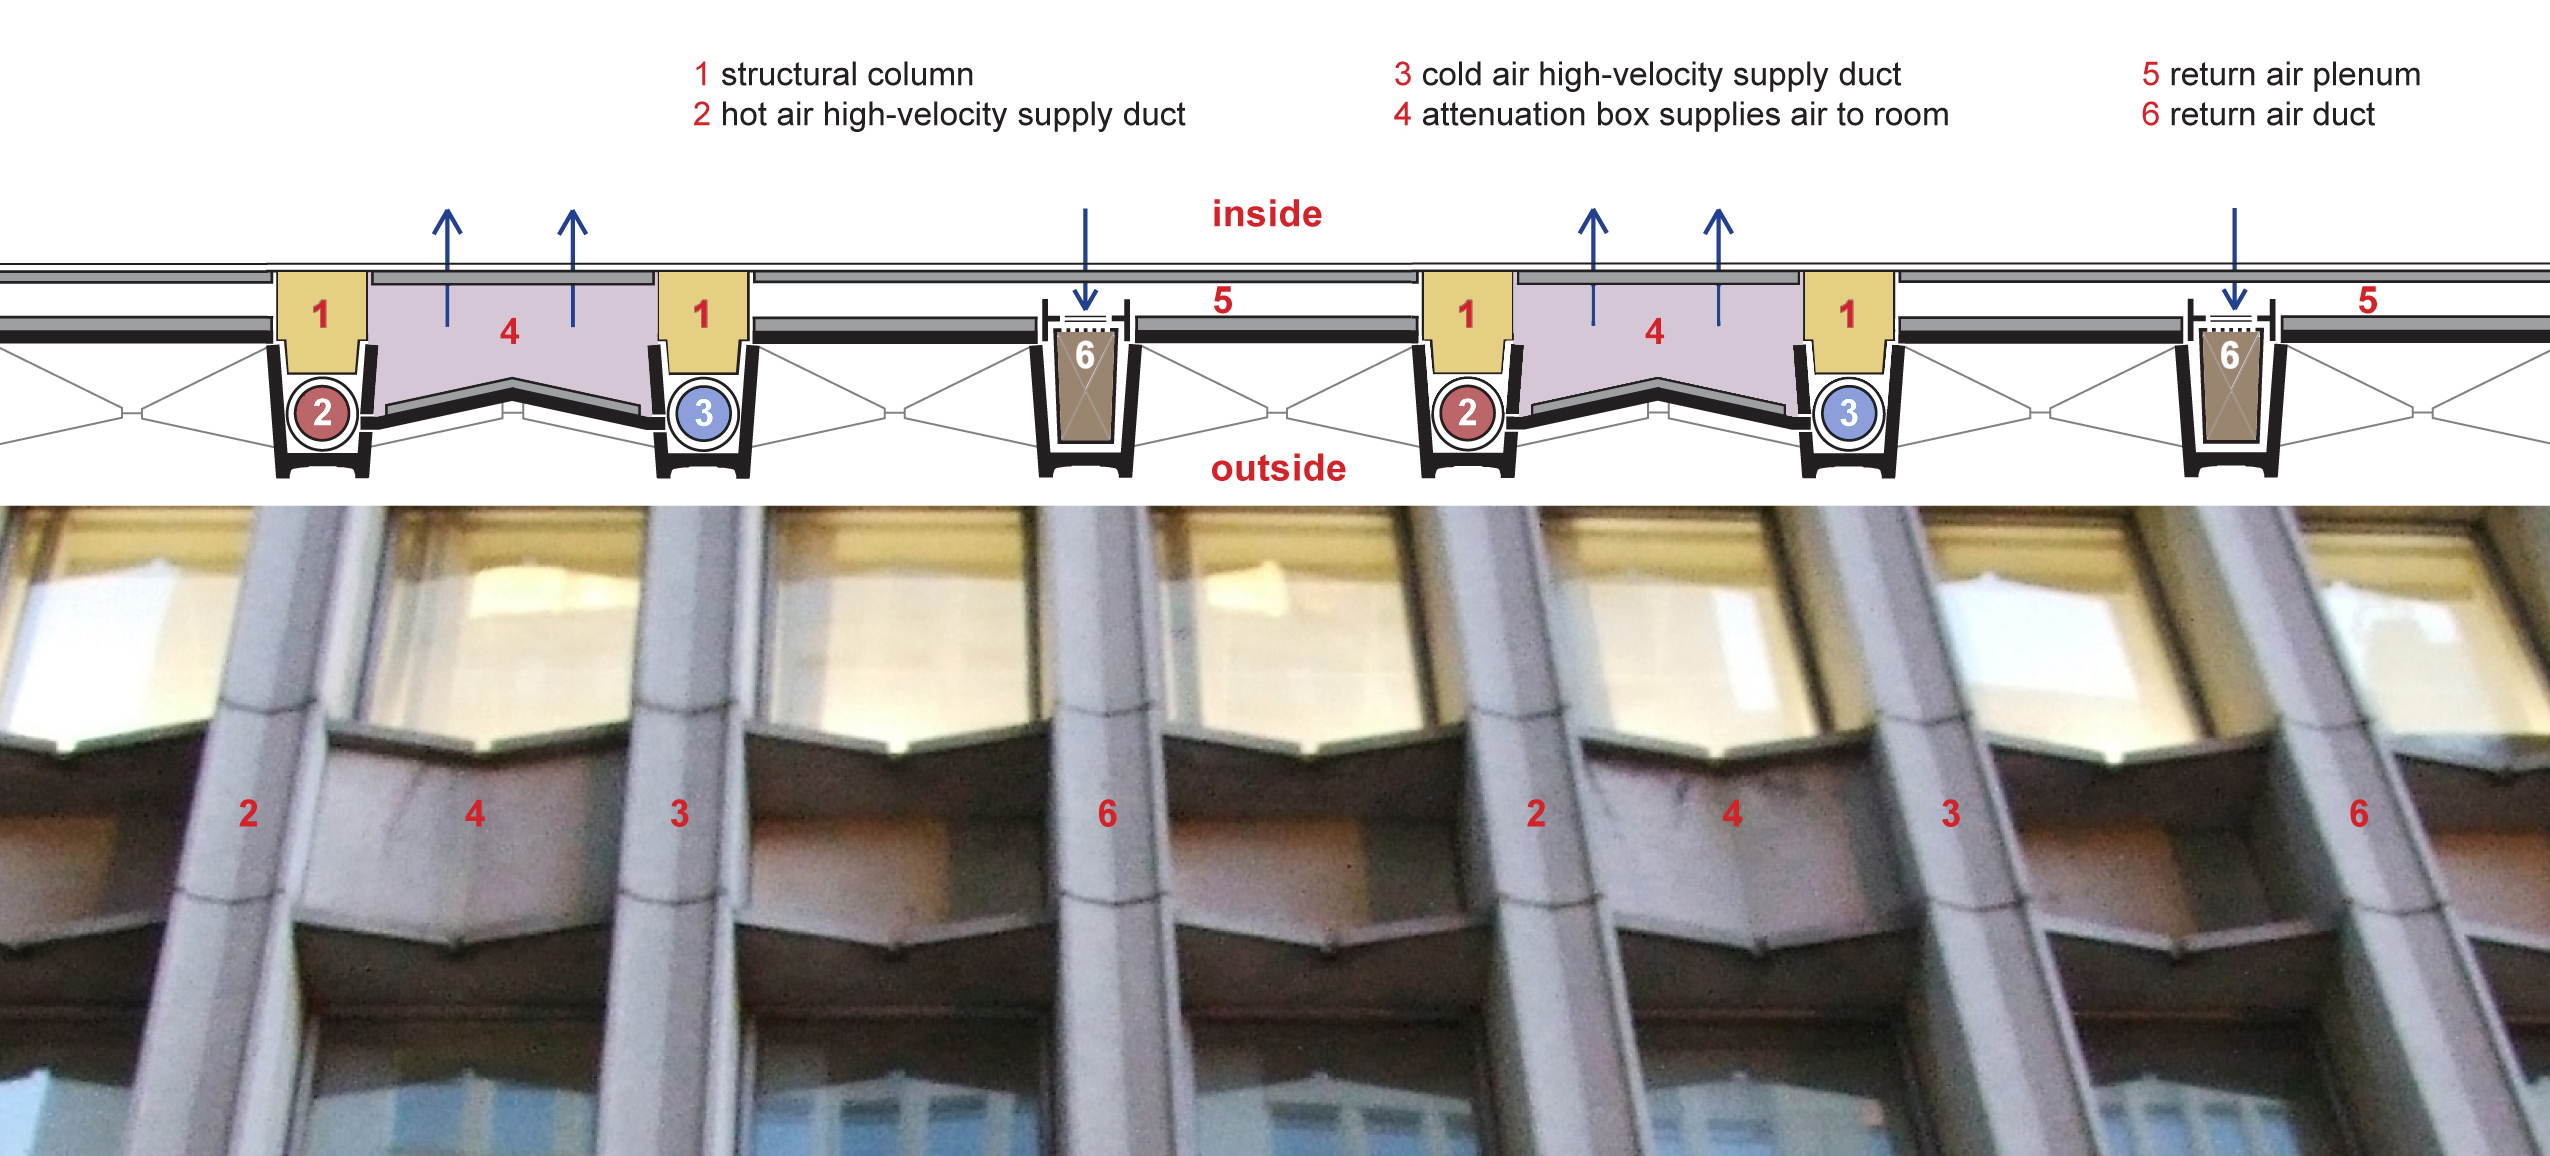 19-facade-ventilation-system.jpg